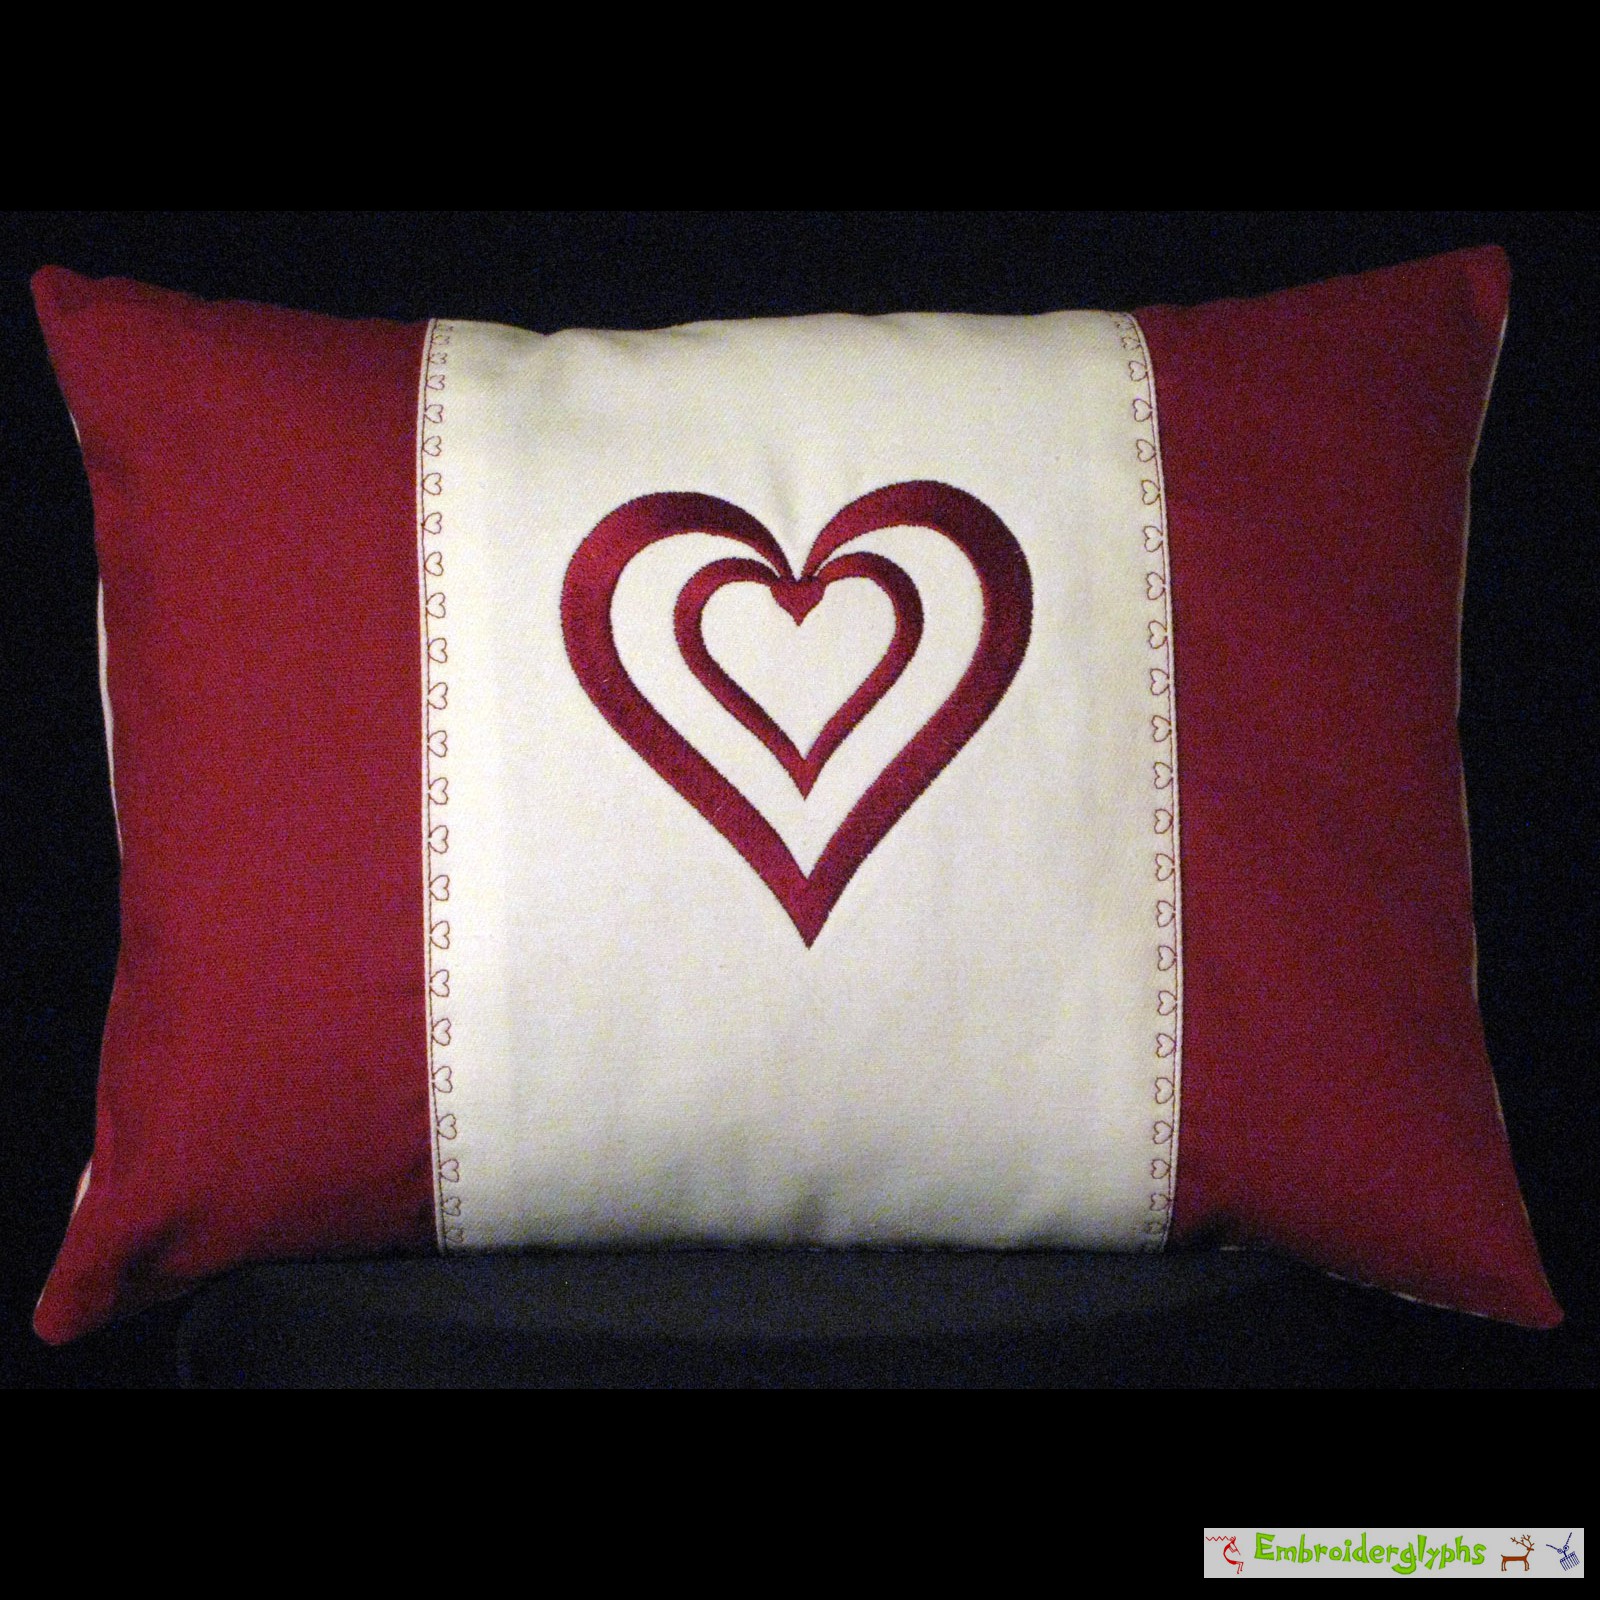 13 1/2 X 11 2 Pillows Plush. with The Princess Embroiding Fun Express “Princess” Heart Pillow 